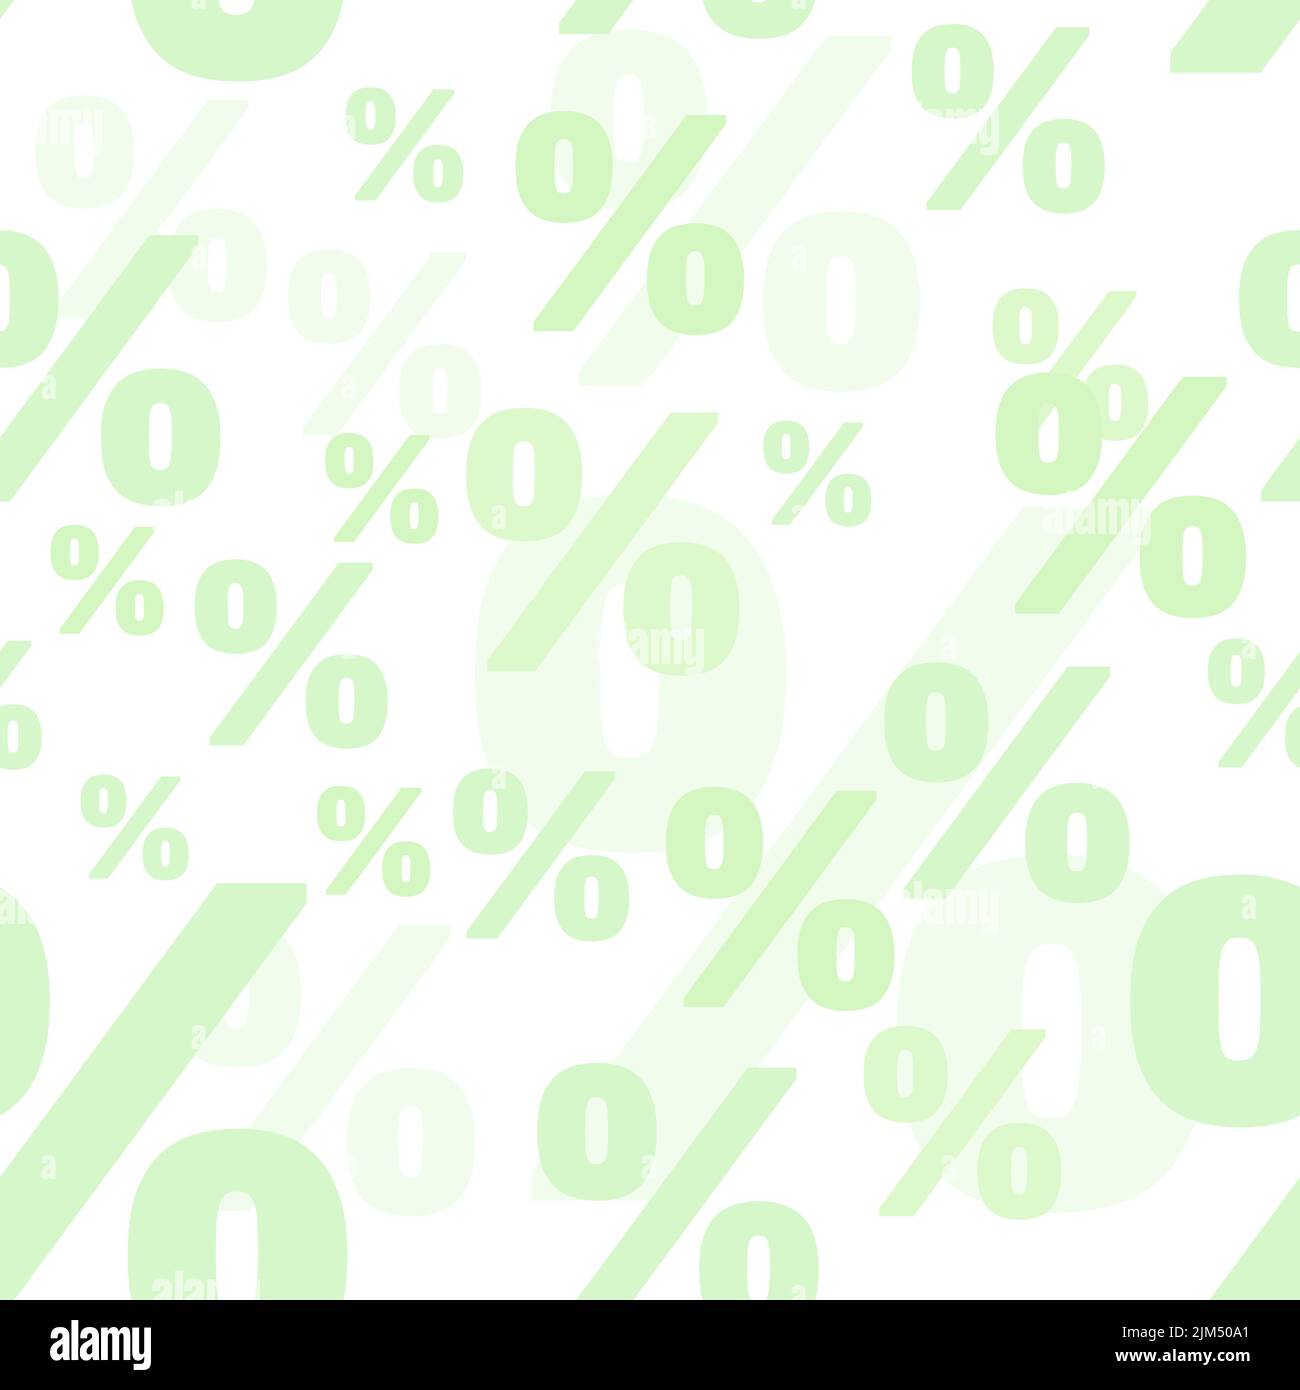 Porcentaje de fondo vectorial integrado. Textura de la promoción publicitaria con símbolo de porcentaje. Color verde claro. Ilustración del Vector